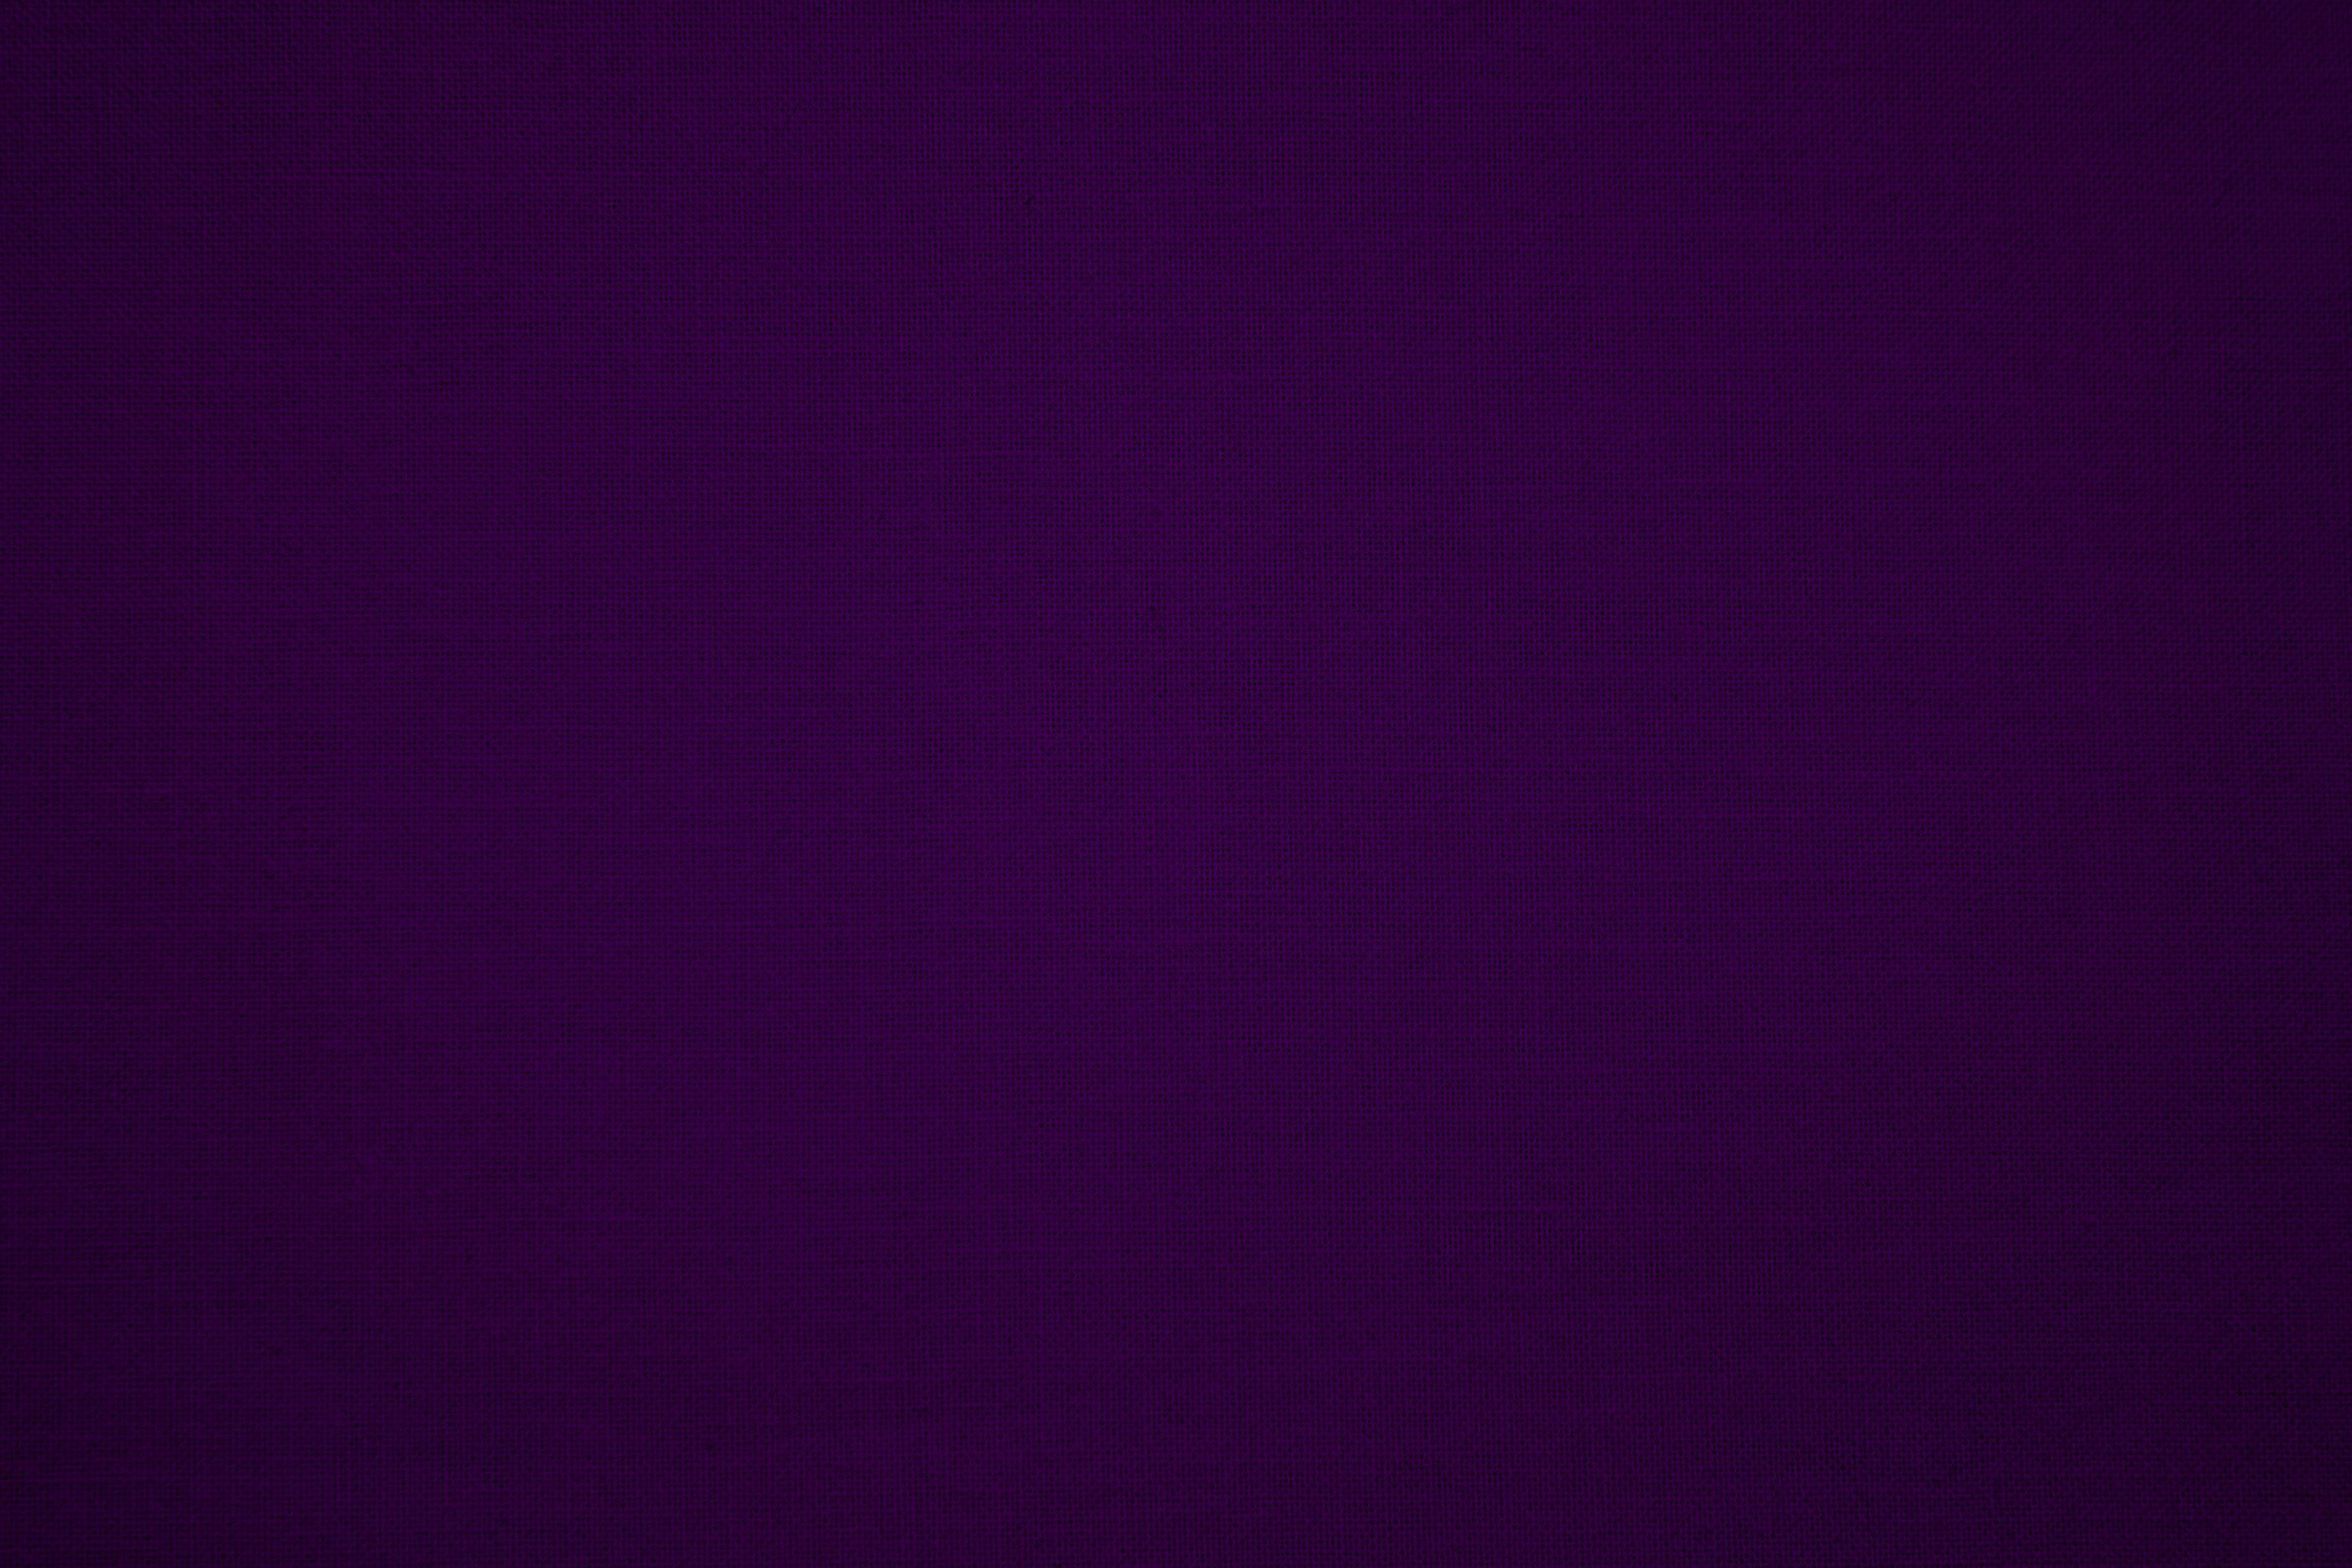 Wallpaper For > Plain Dark Purple Background